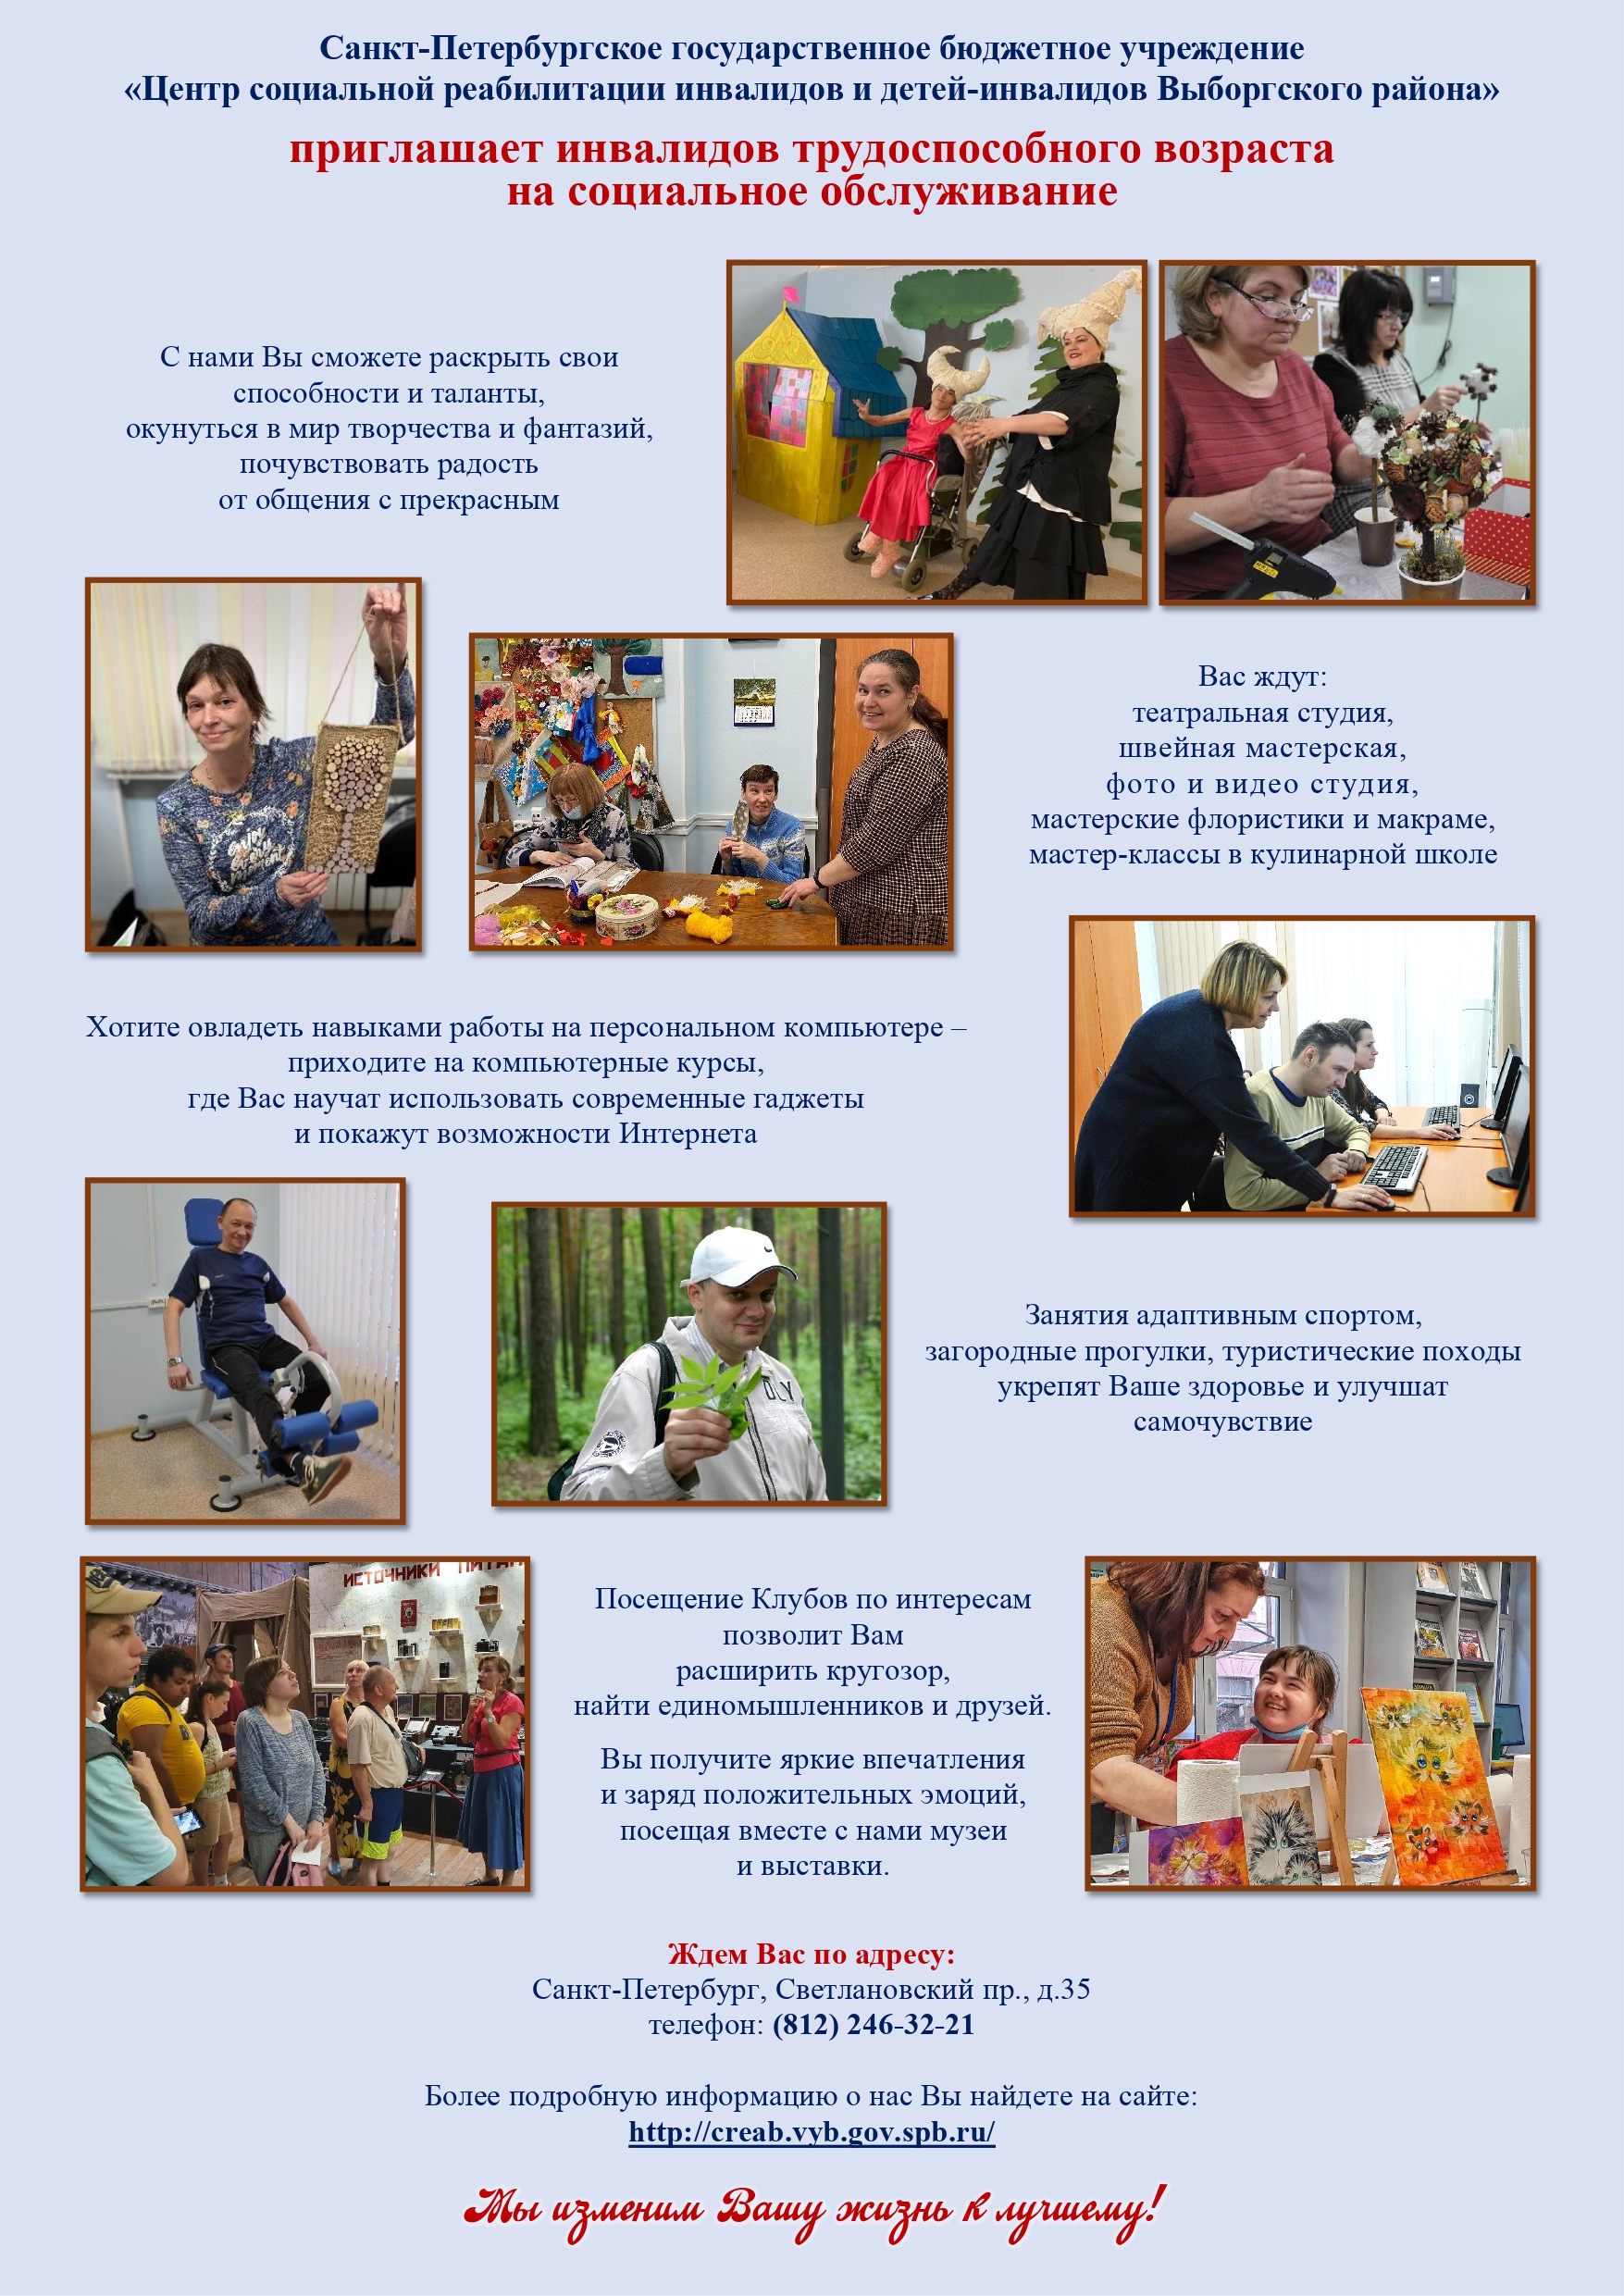 Информация о Санкт-Петербургском государственном бюджетном учреждении "Центр социальной реабилитации инвалидов и детей - инвалидов Выборгского района"